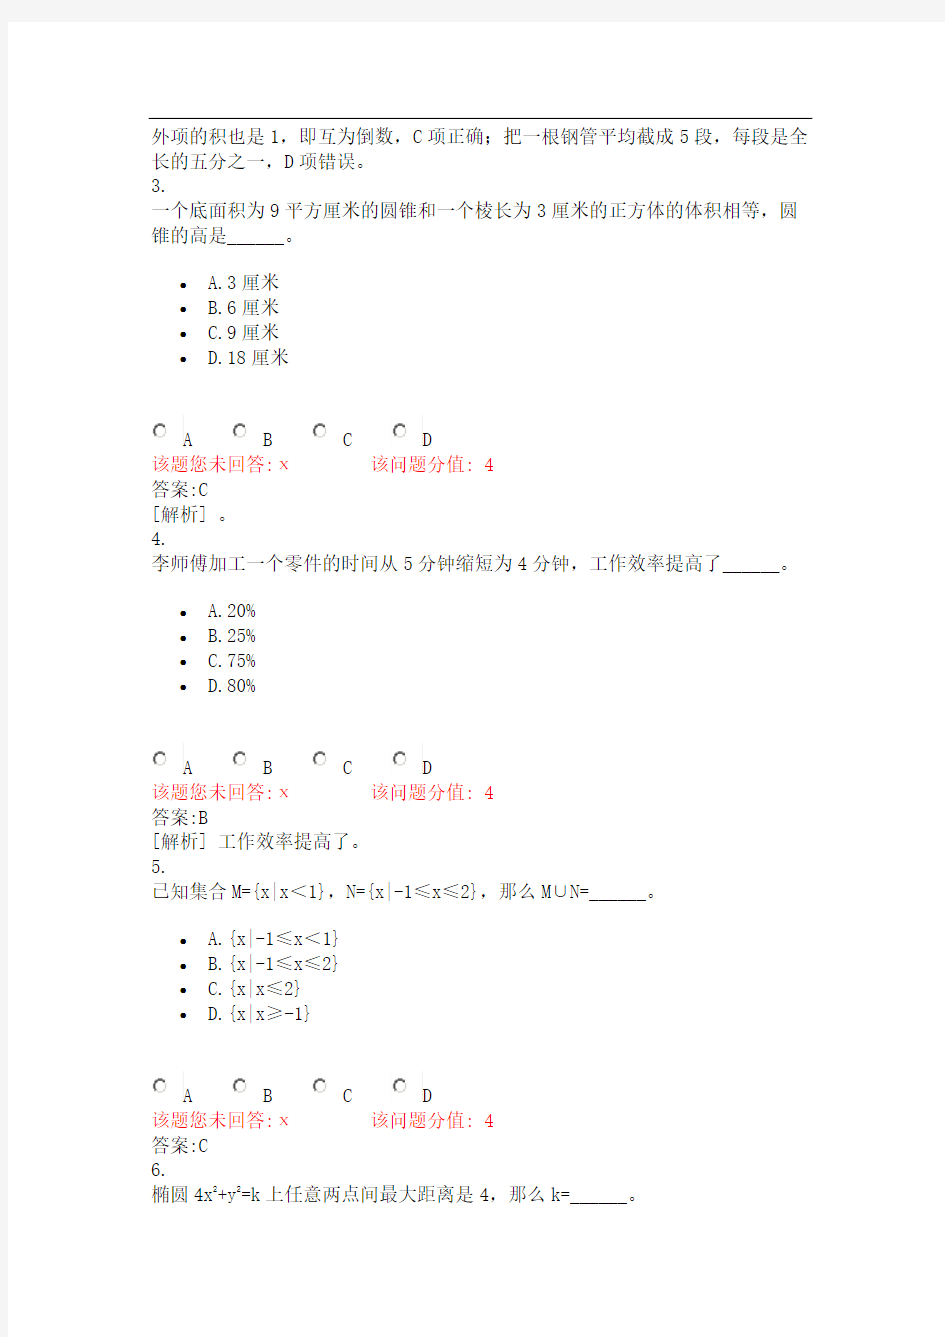 福建省教师公开招聘考试小学数学真题2014年